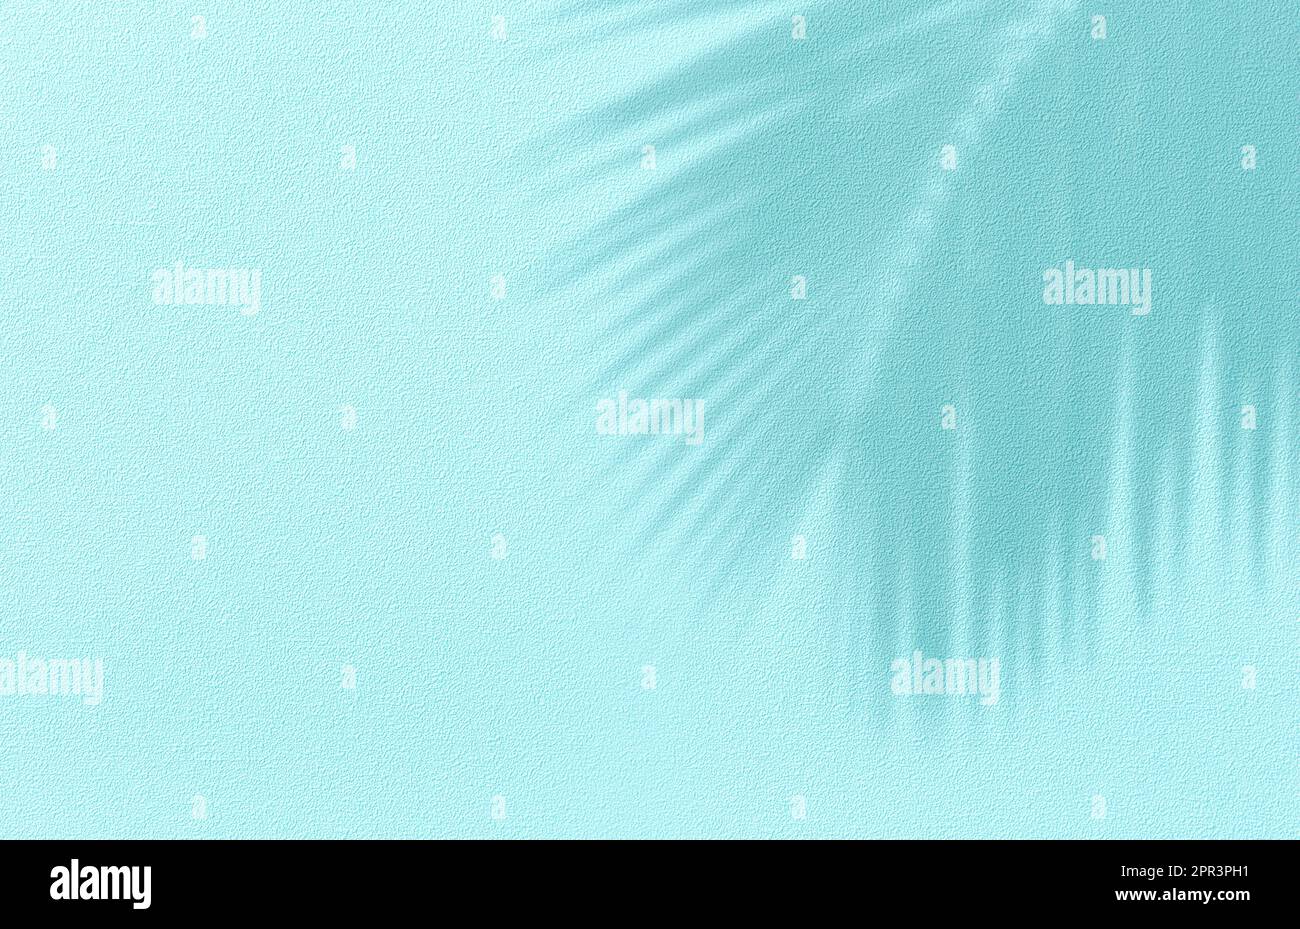 Panorama der Strukturwand mit Kokospalmen-Blattschatten auf türkisfarbenem Hintergrund. Sommer tropische Reise Strandkonzept. Flach liegend, pastellfarben, Handfläche natur Stockfoto